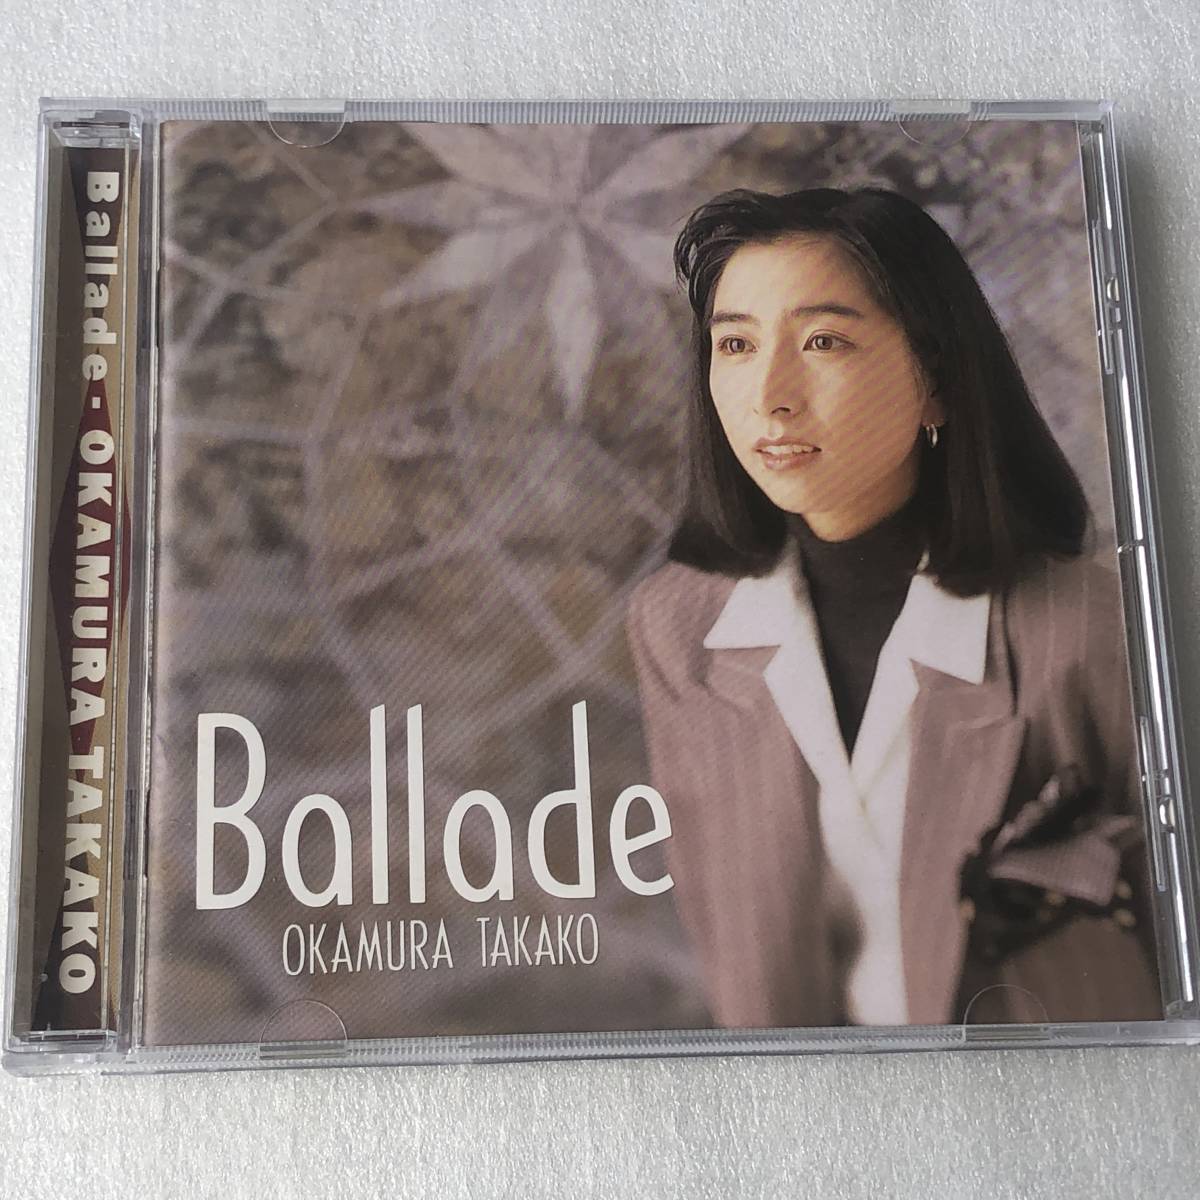 中古CD 岡村 孝子 Okamura Takako/Ballade バラード リミックス盤(1992年) 日本産,J-POP系_画像1